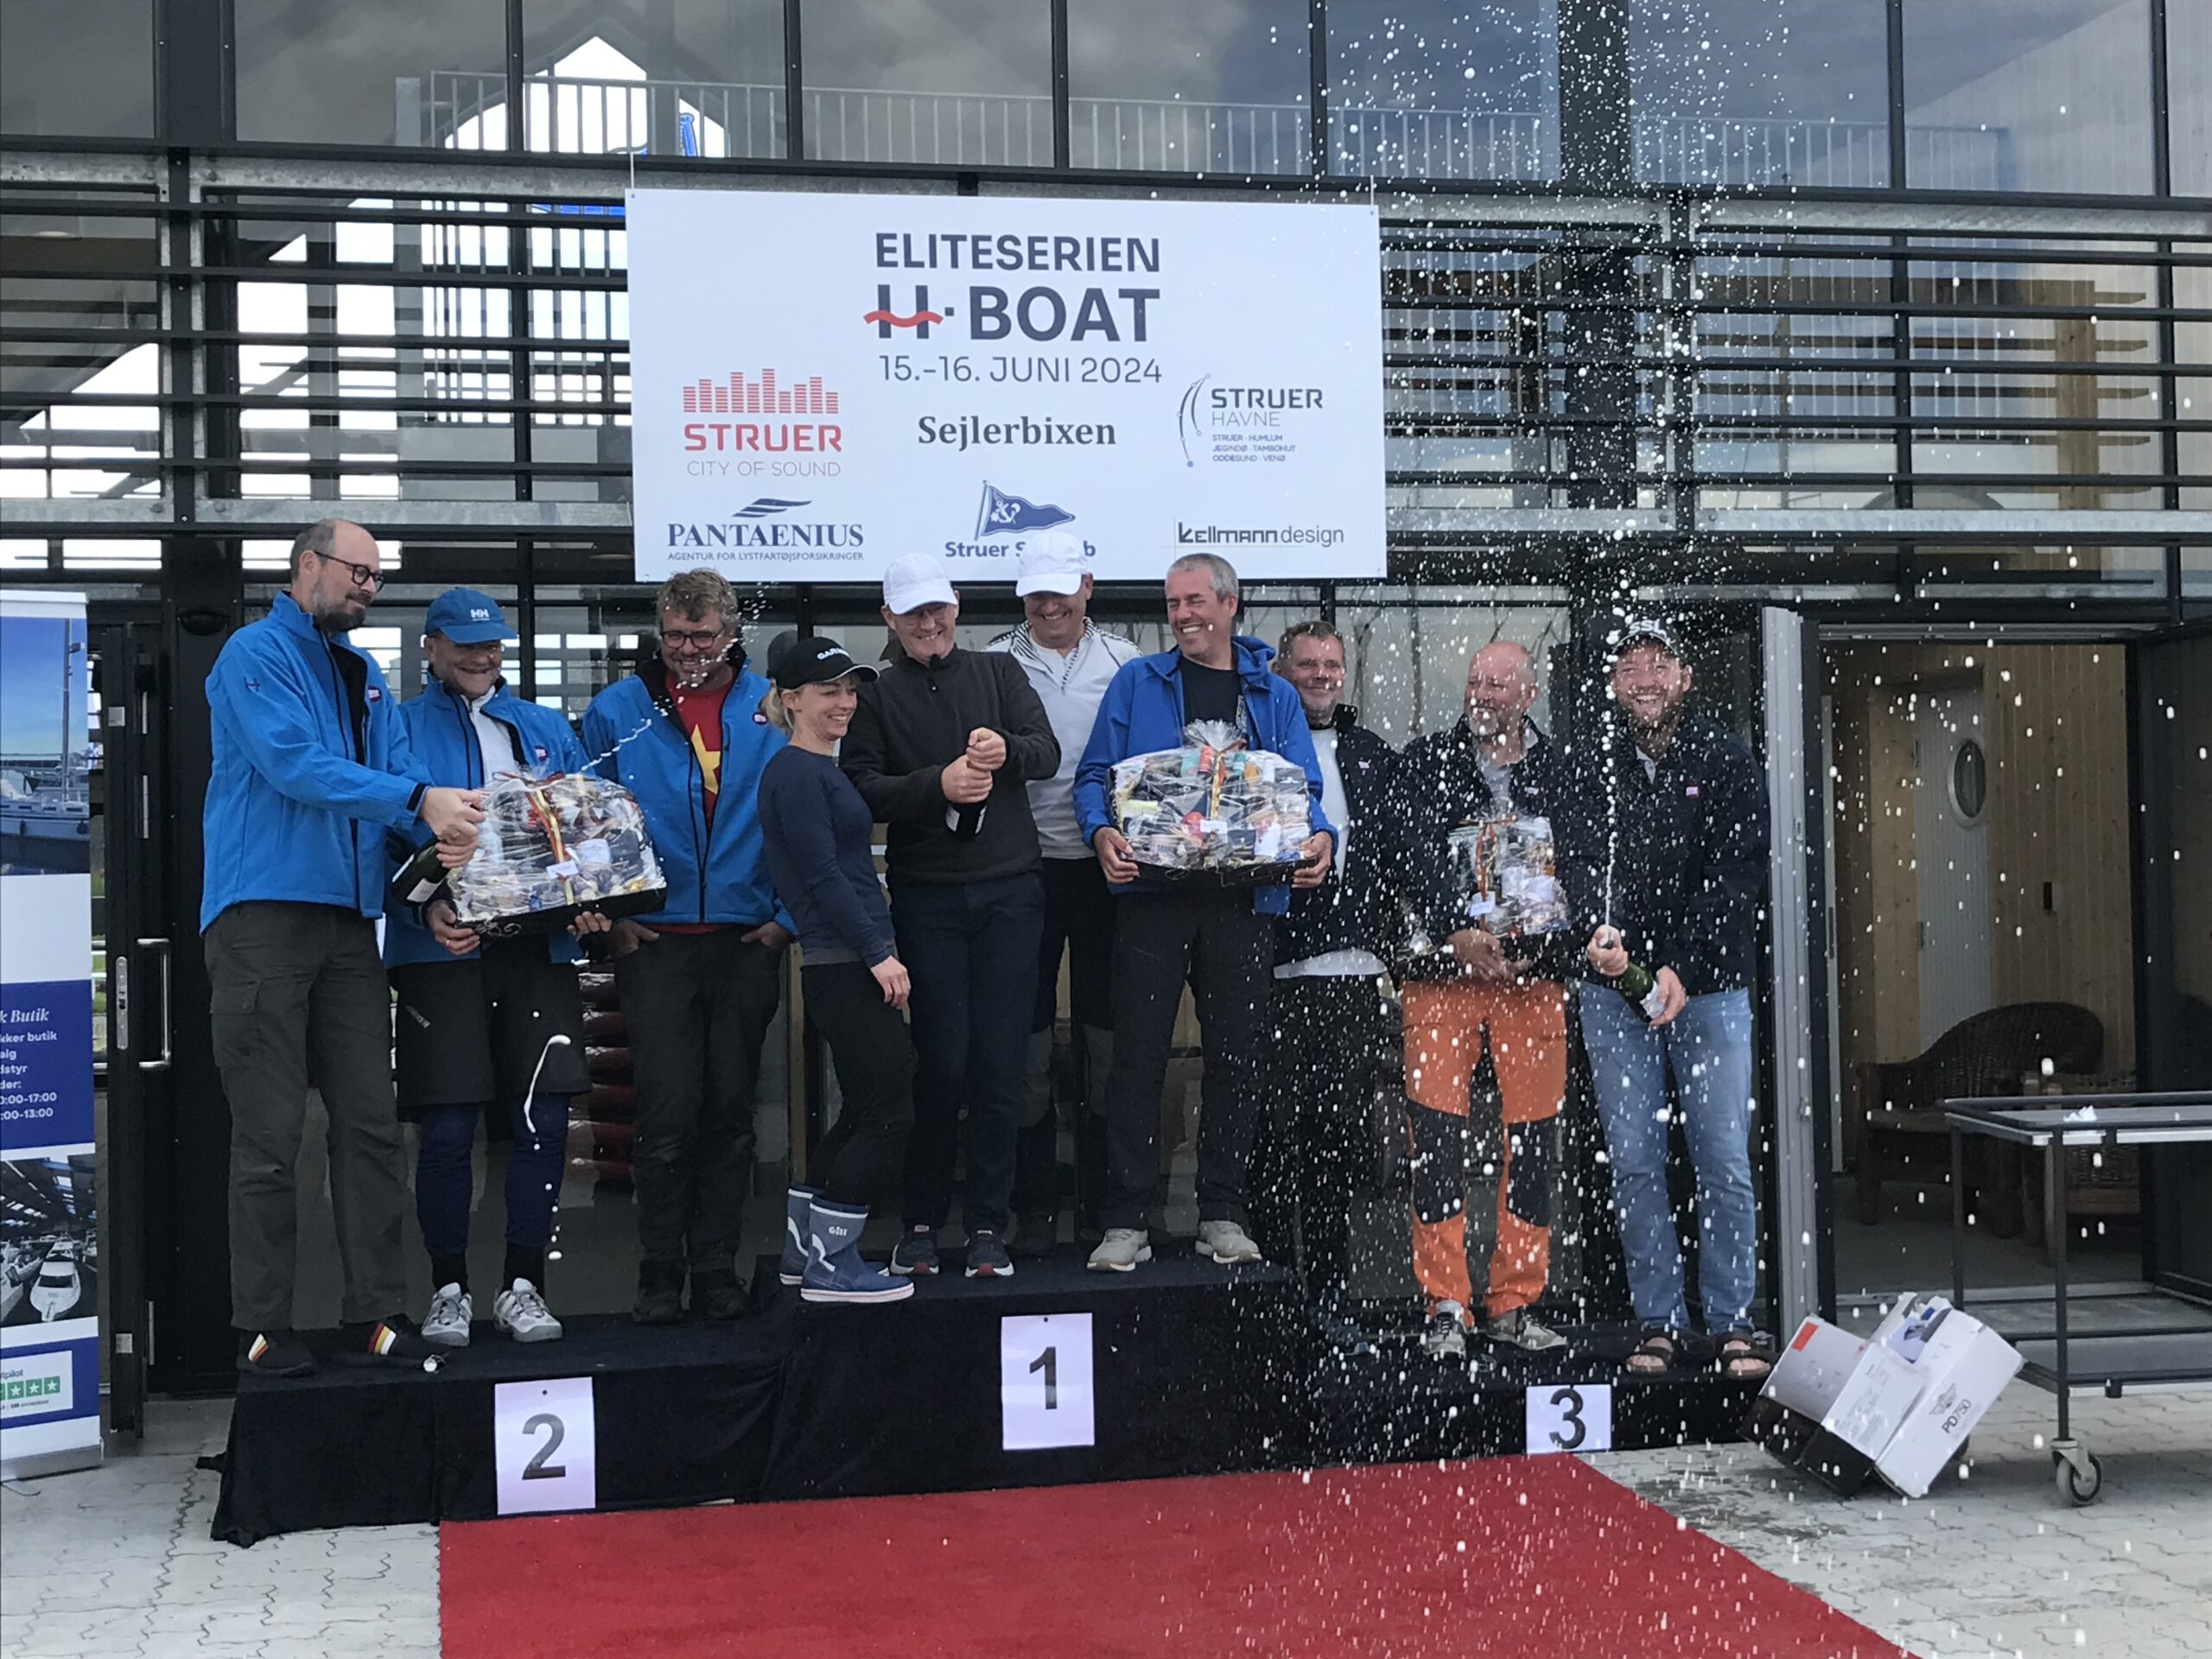 Tak til Struer Sejlklub for skønt værtsskab af H-bådsklassens 2. stævne i Eliteserien